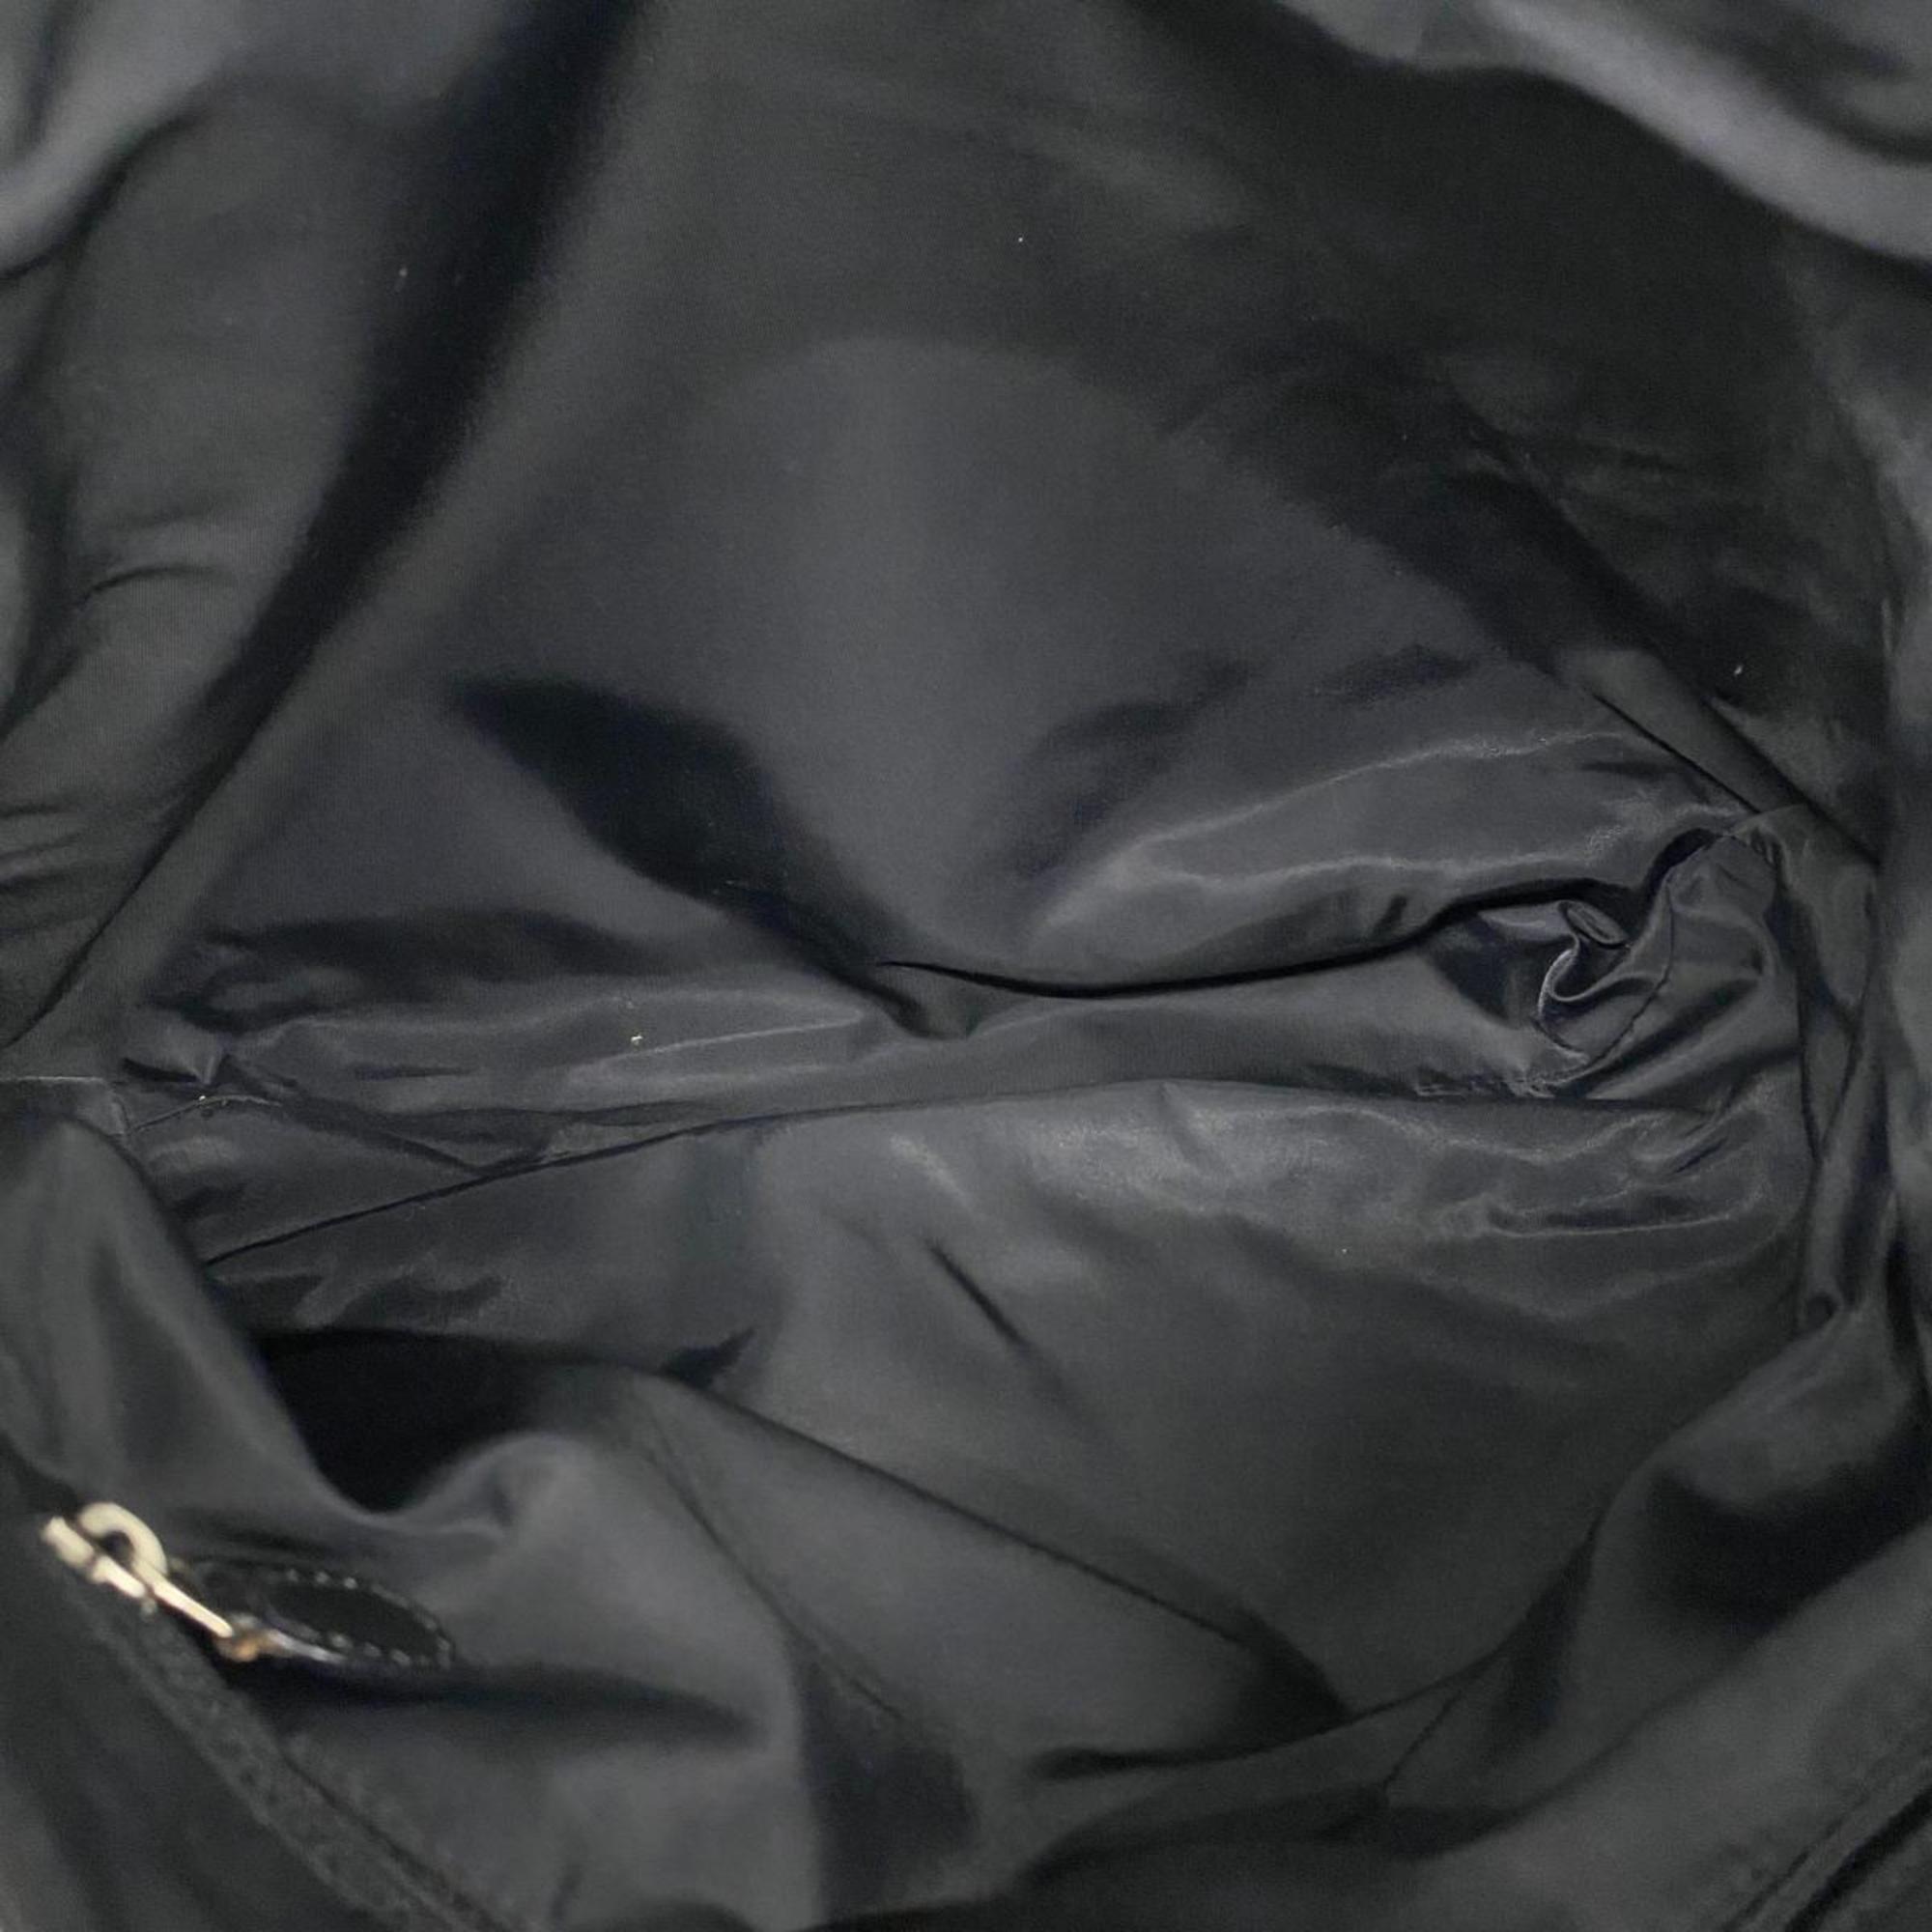 Christian Dior Shoulder Bag Trotter Canvas Leather Black Women's